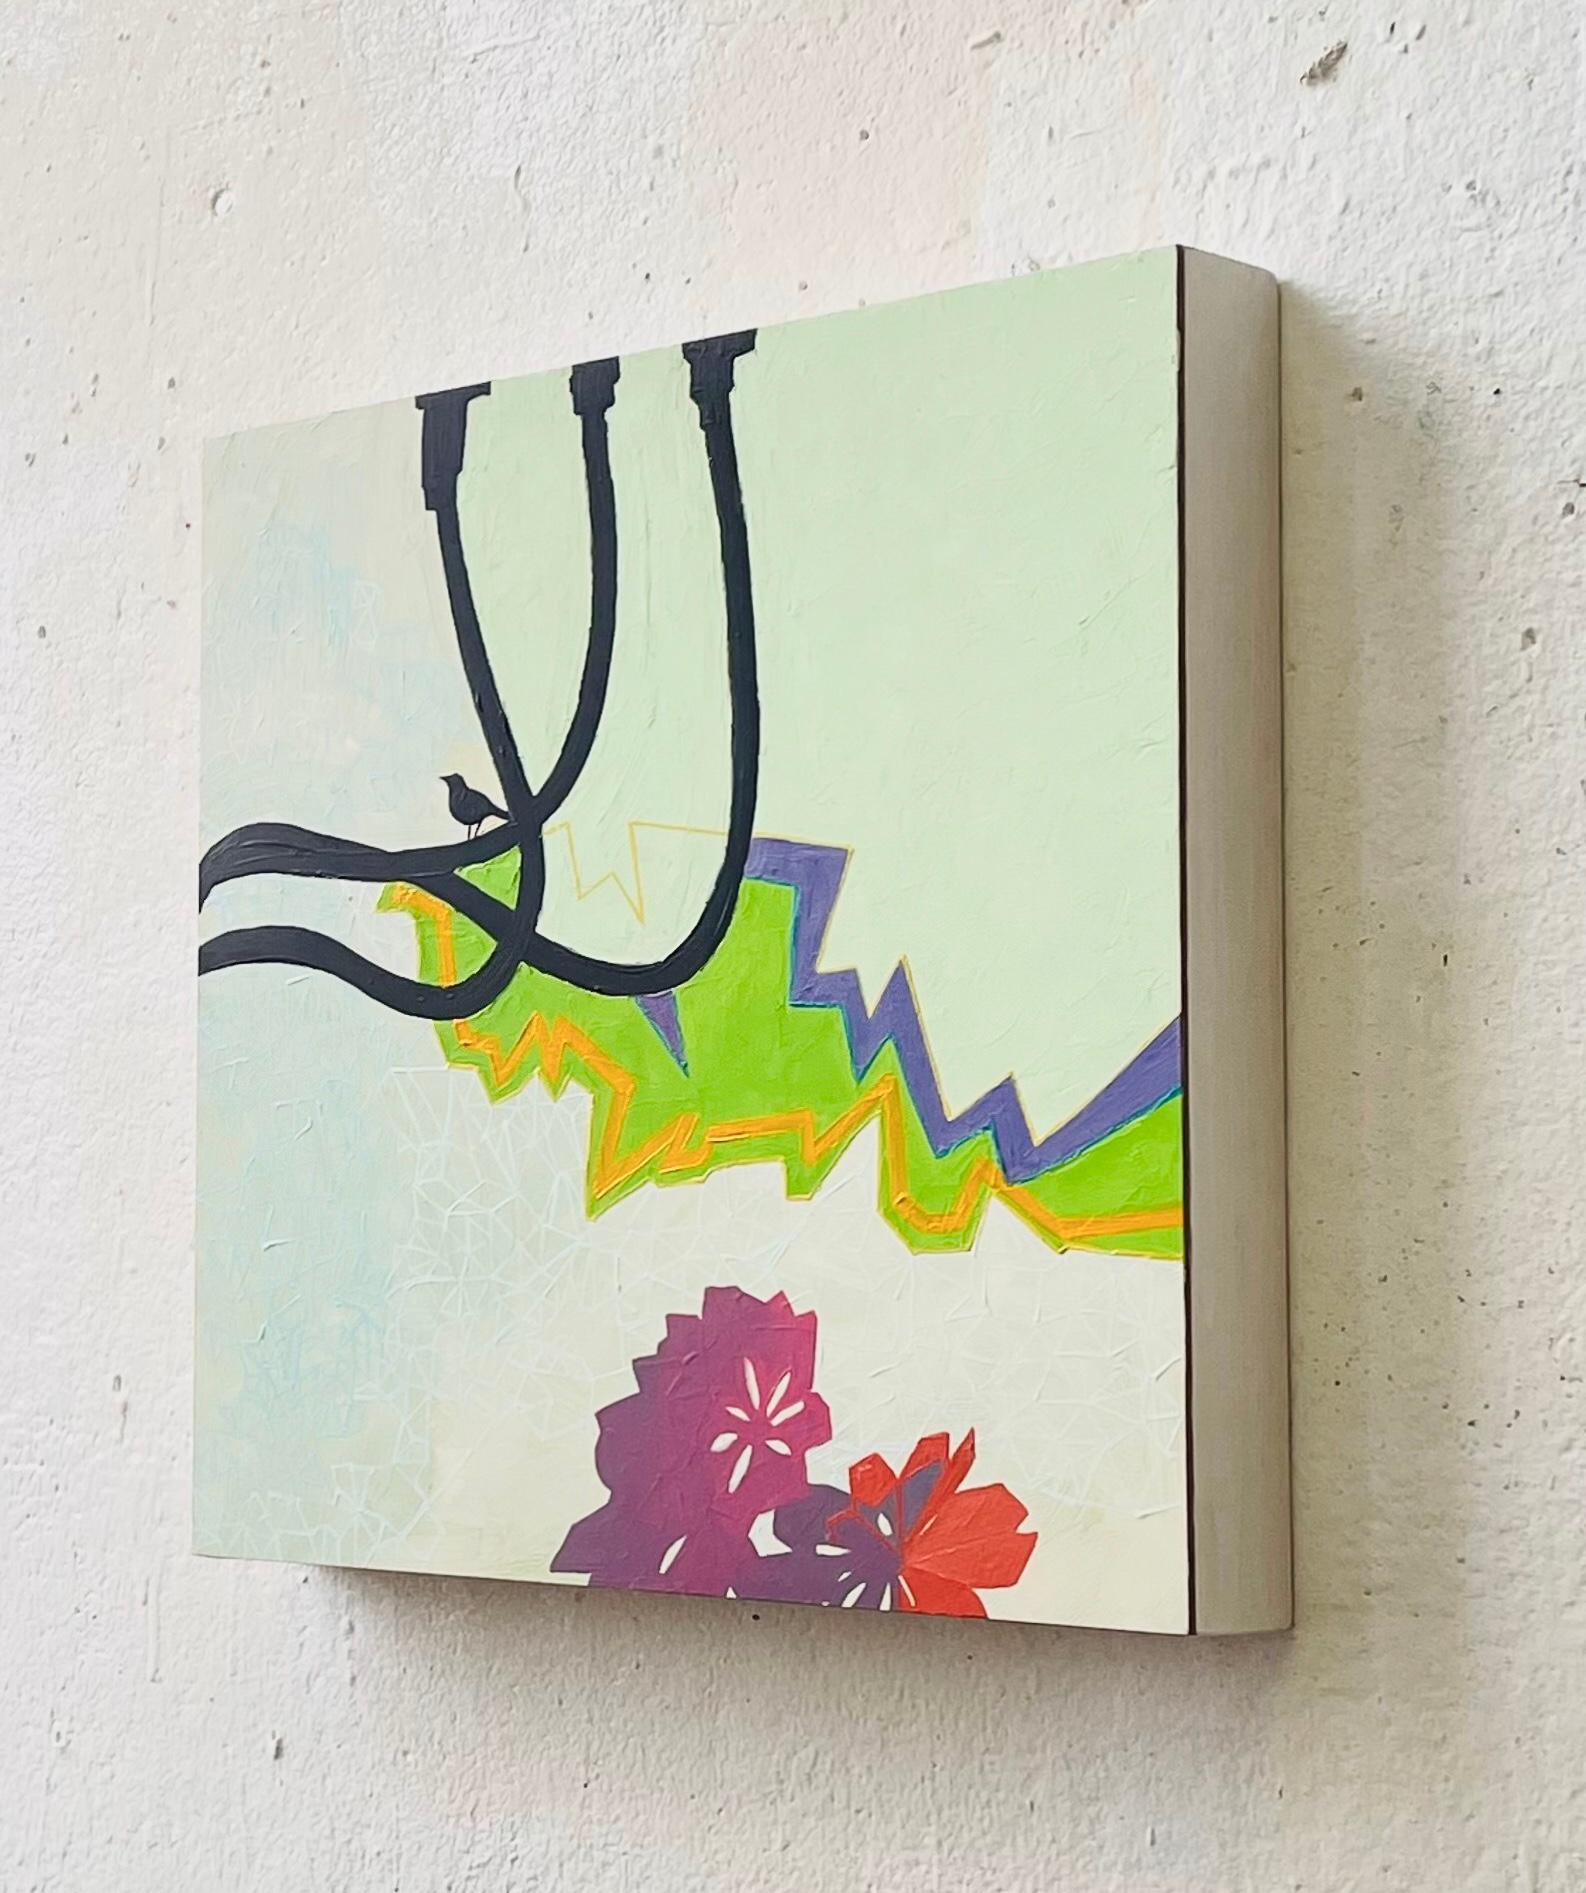 Comment Birds See II : peinture abstraite contemporaine avec oiseau en blanc, vert et violet - Vert Abstract Painting par Deirdre Murphy